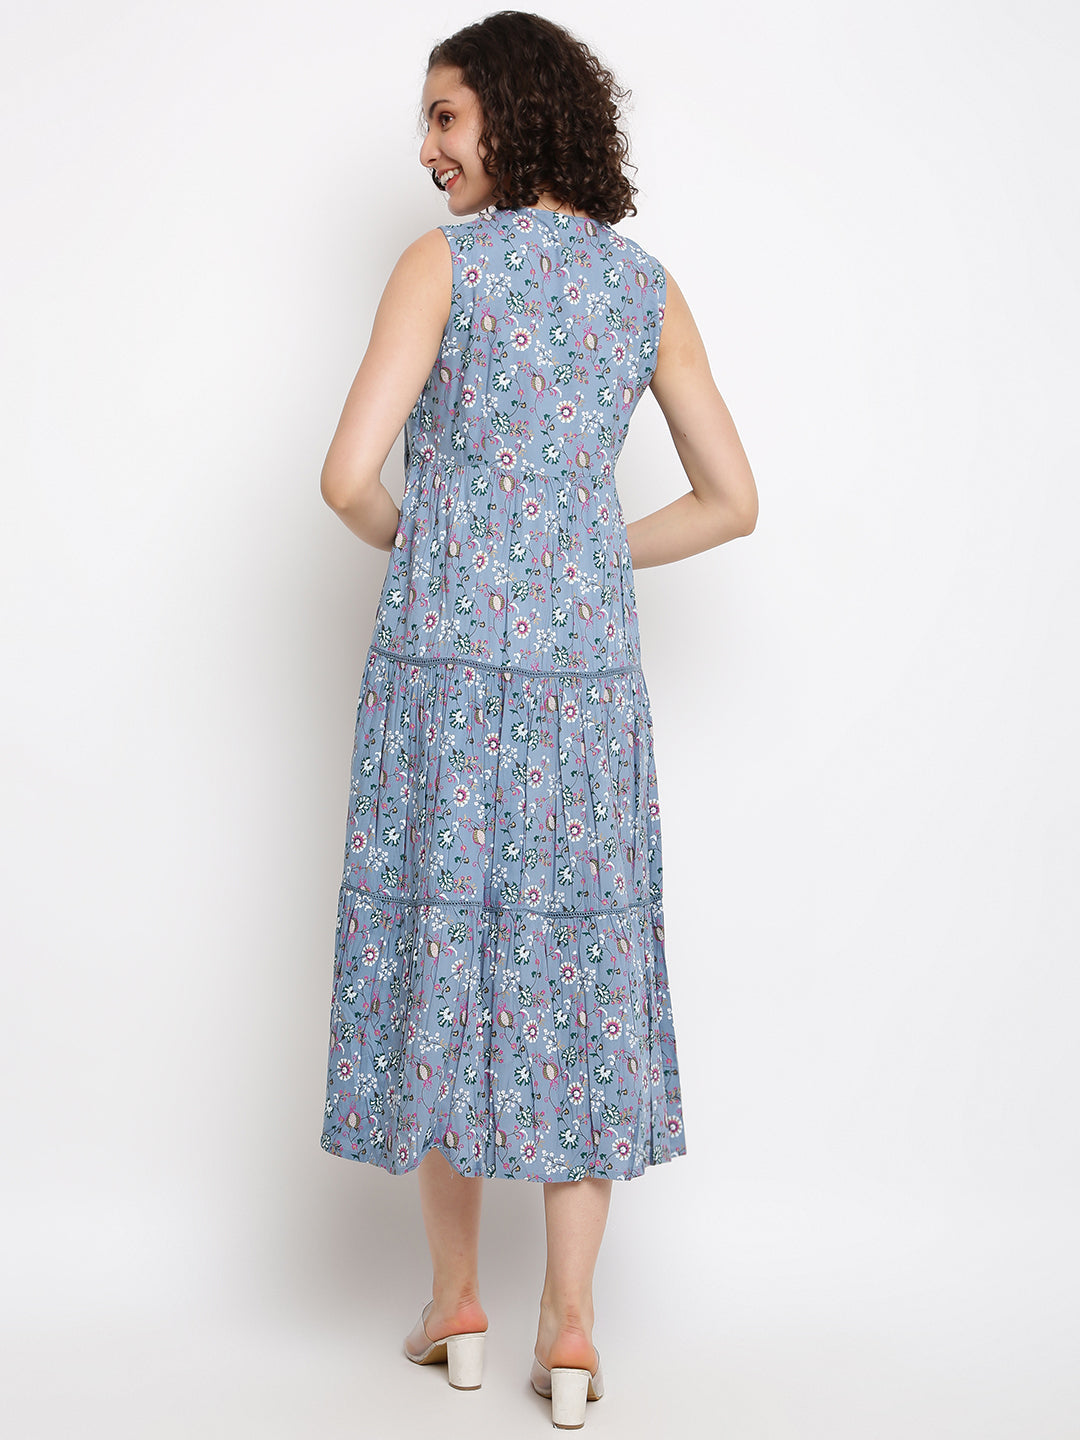 Women's Printed Blue Tiered Dress - IMARA